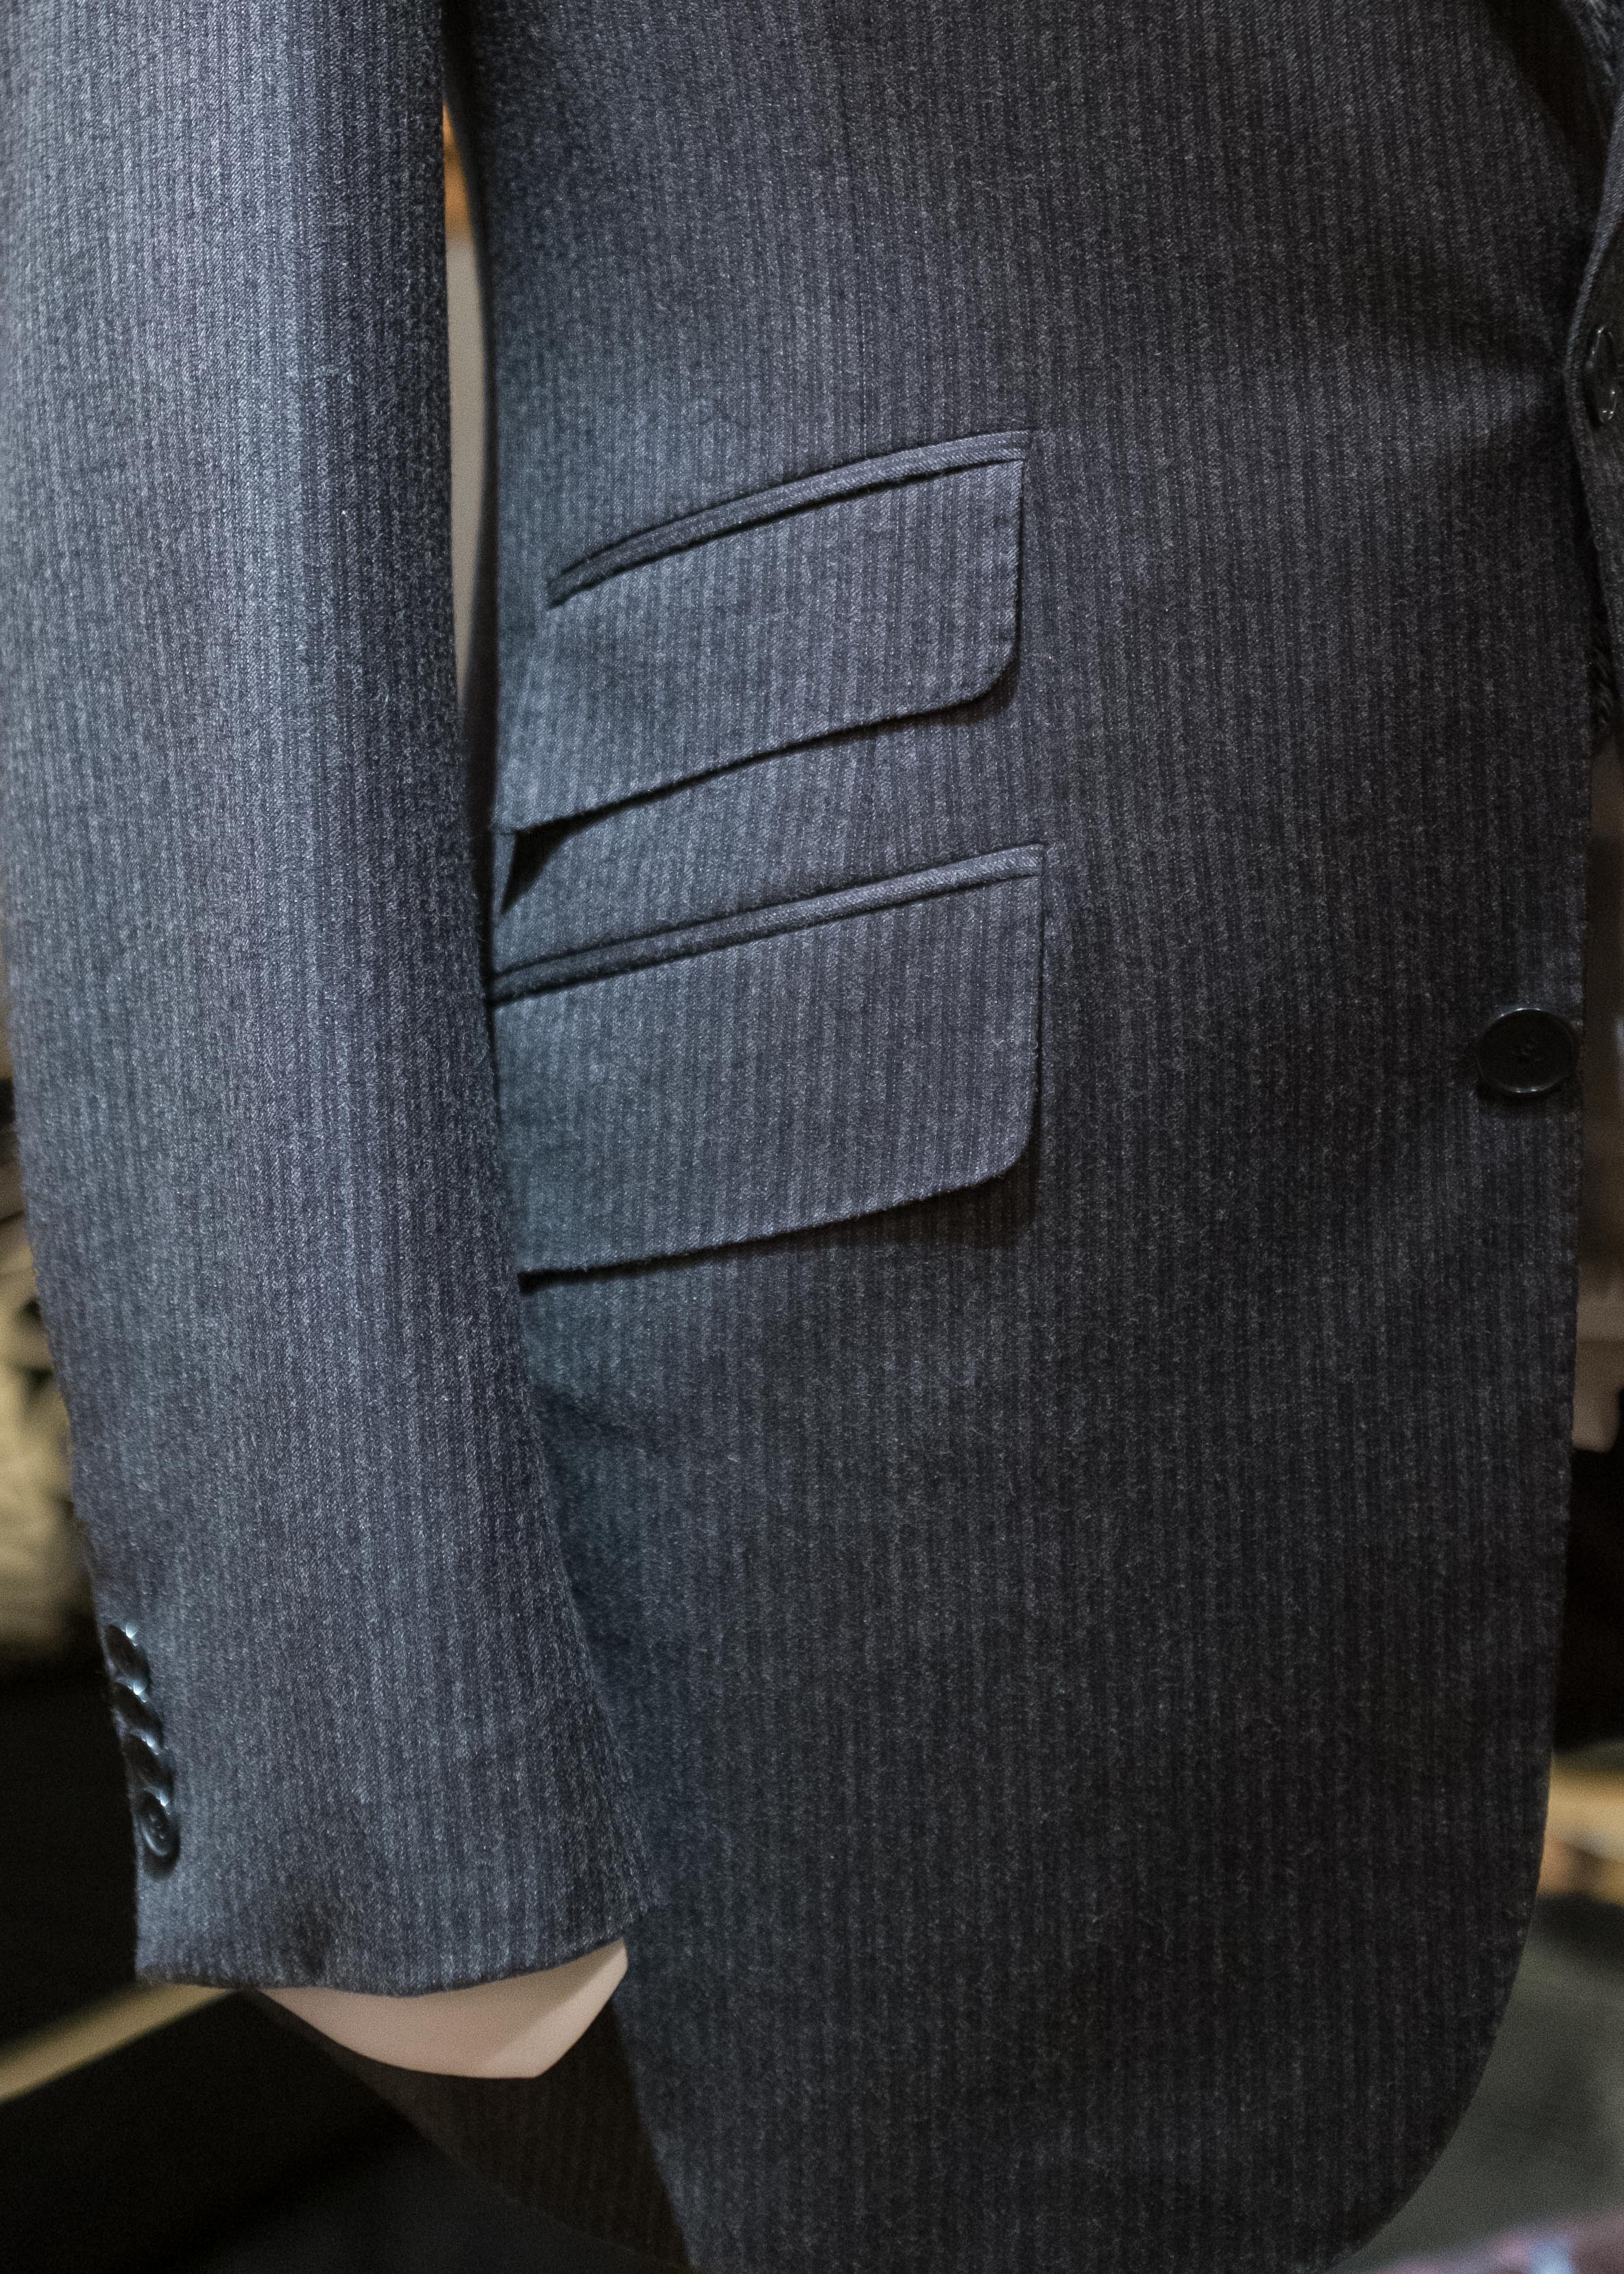 Jacket and Suit Pocket Options — Alan Flusser